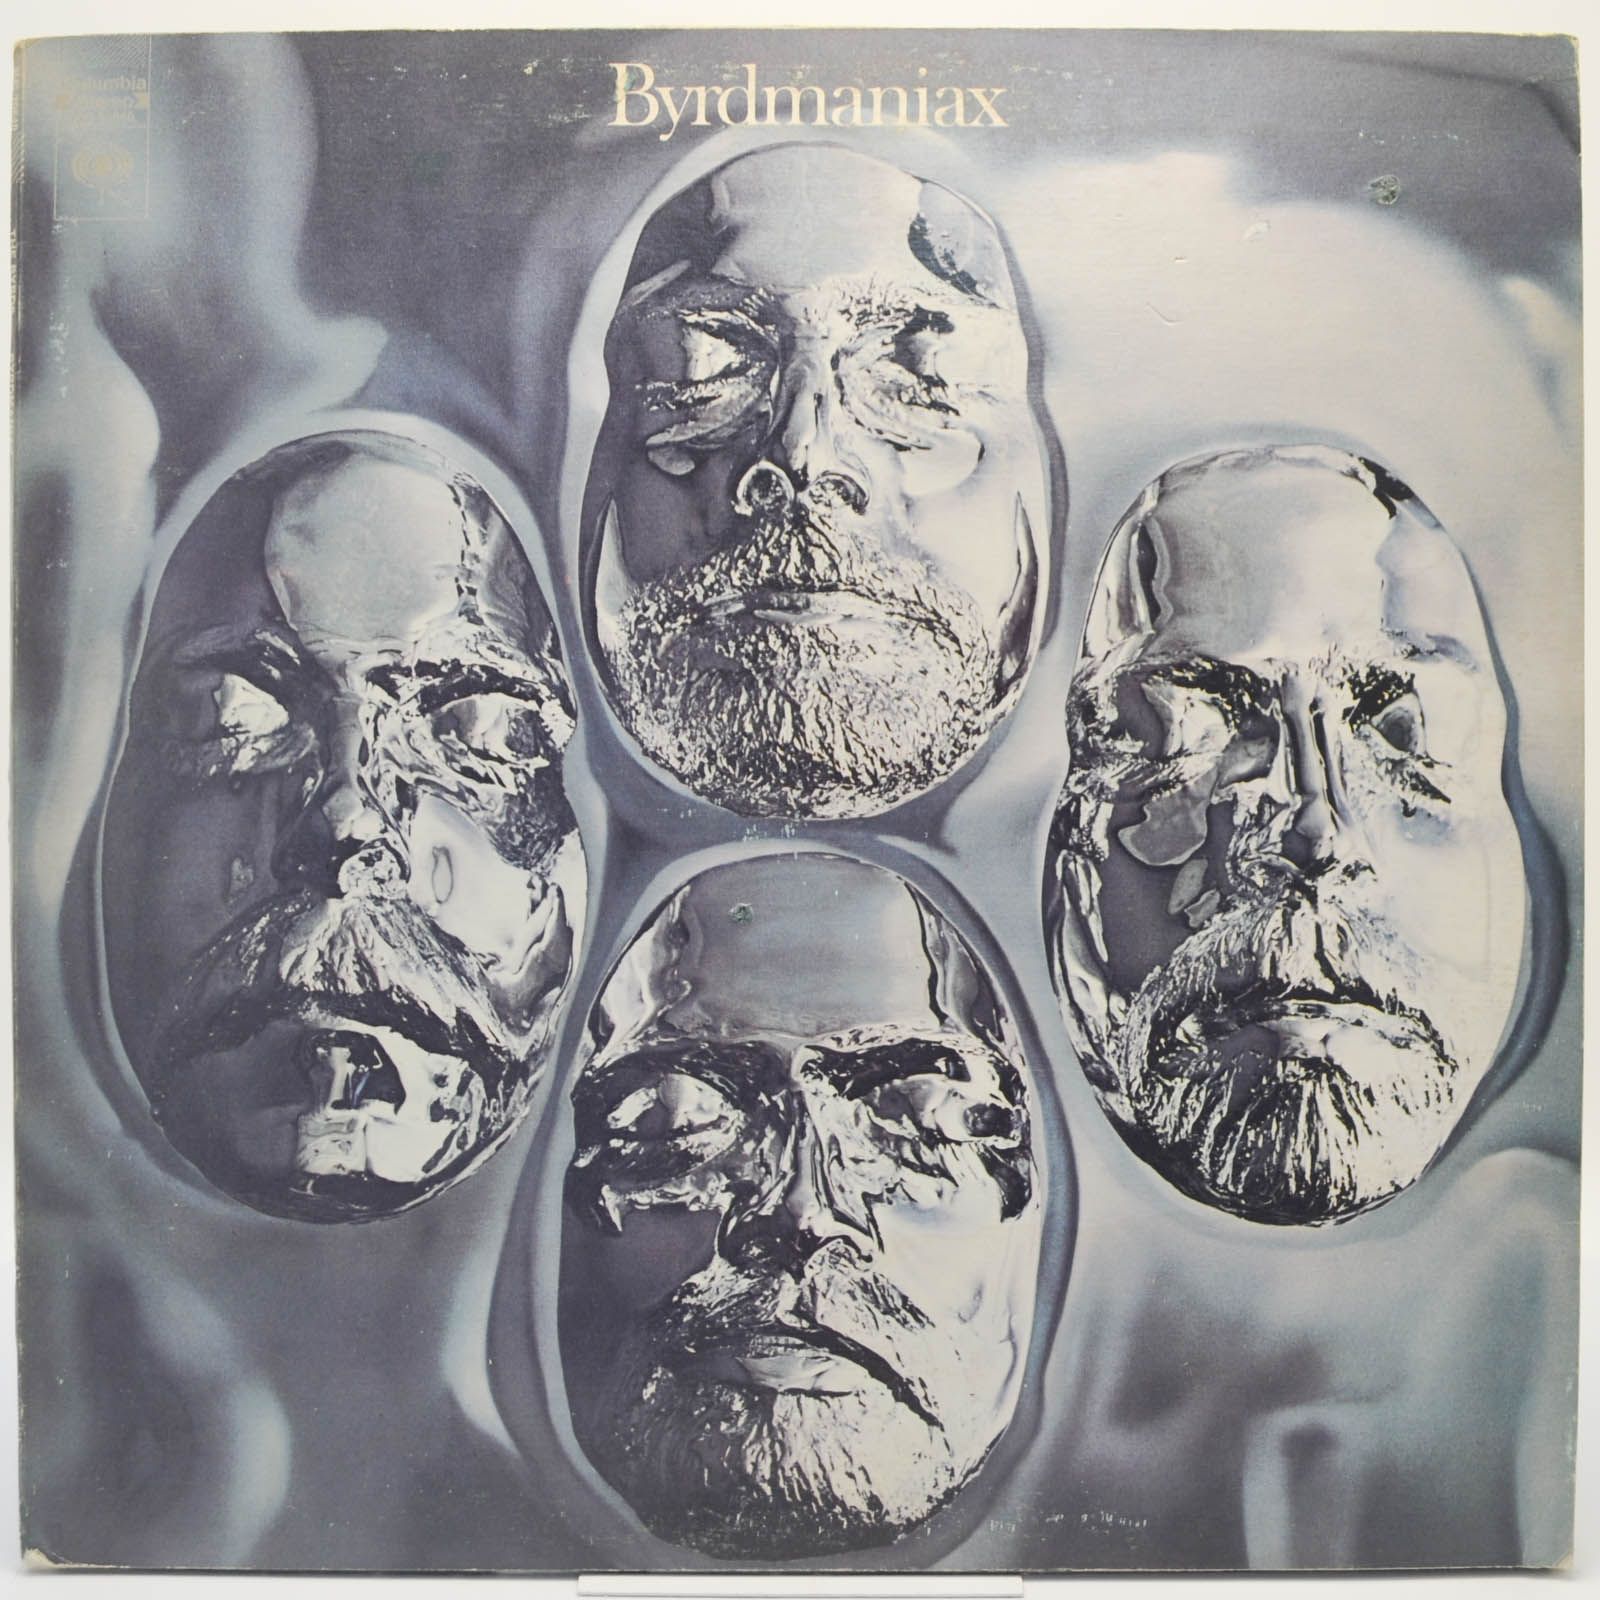 Byrds — Byrdmaniax, 1971